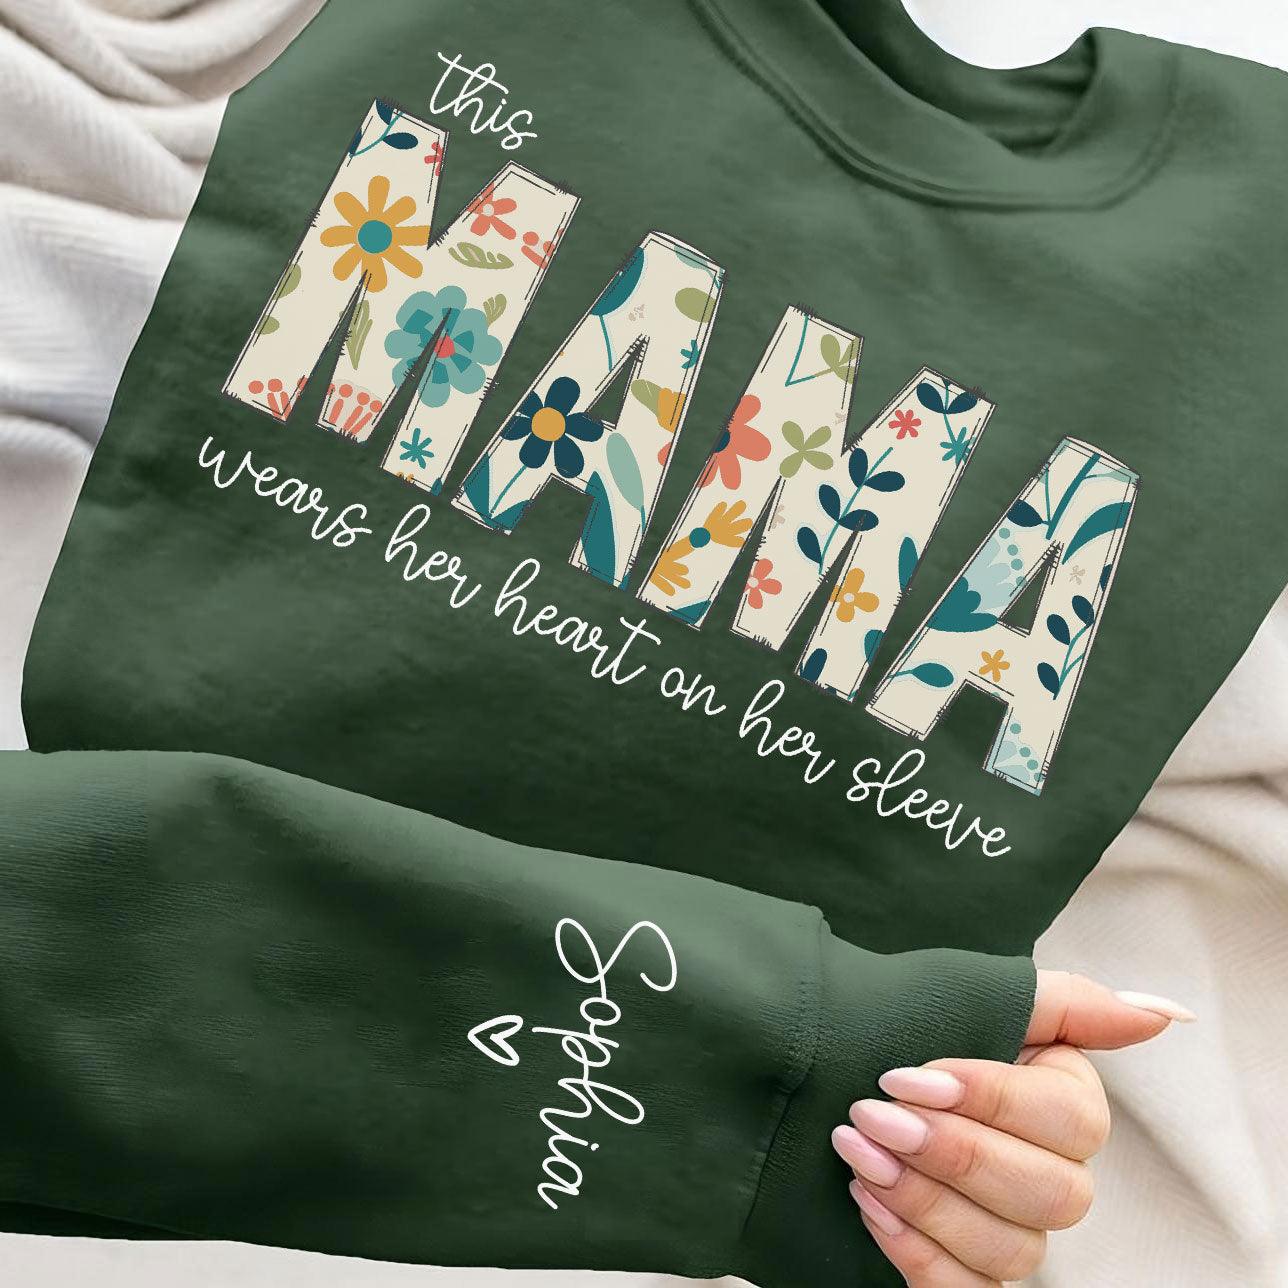 Personalisiert Mama Sweatshirt mit Kindernamen auf dem Ärmel - Geschenk für Mama - GiftHaus